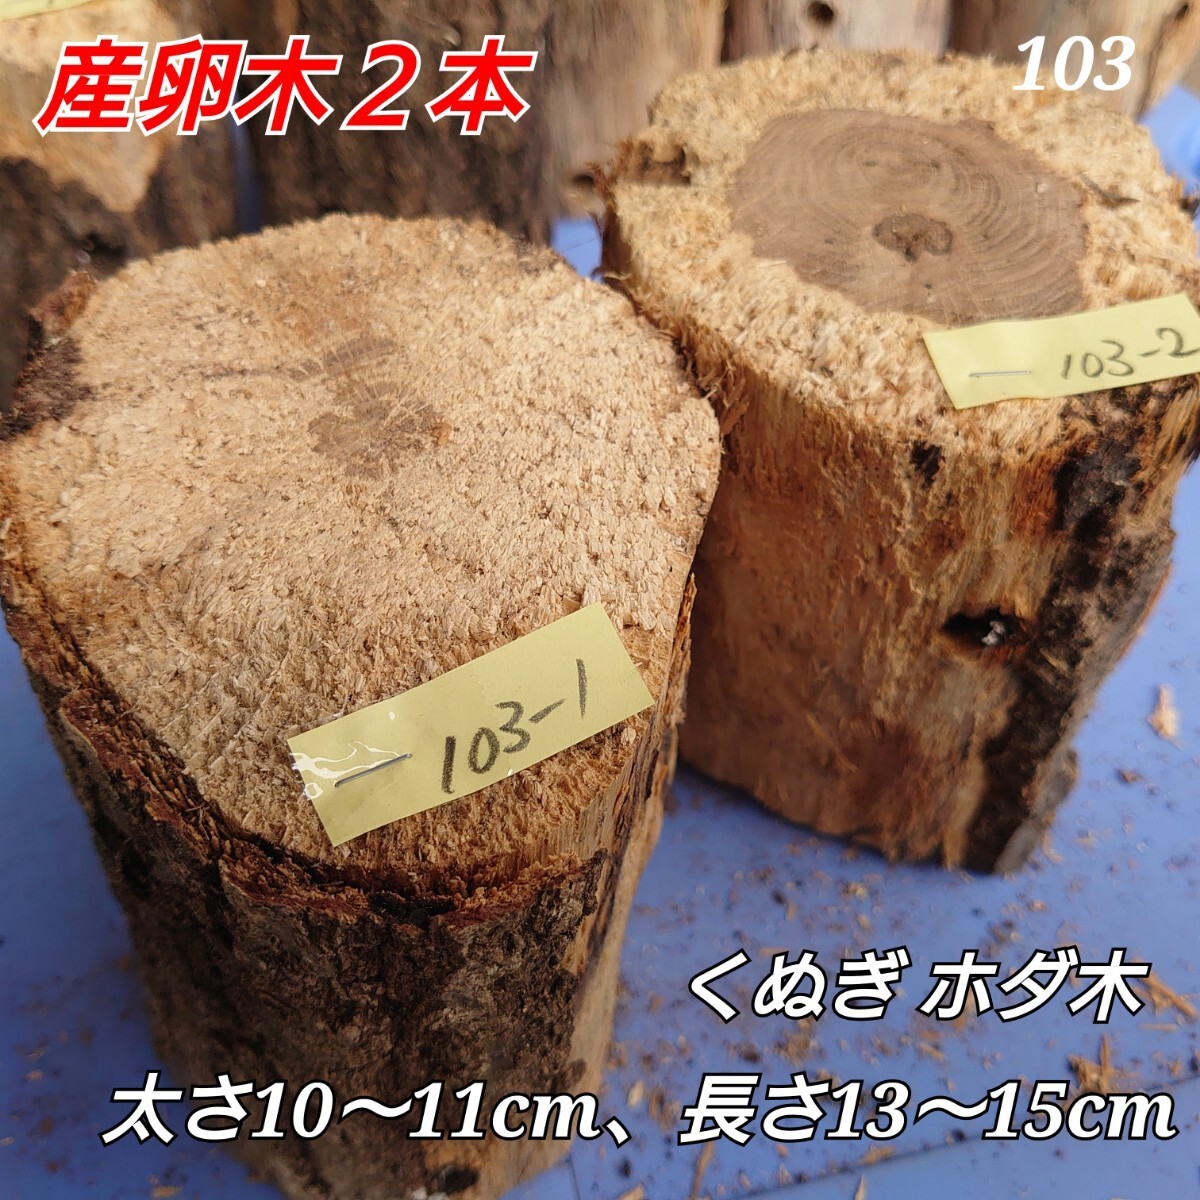 [ включая доставку ] производство яйцо дерево N103... 2 шт ho da дерево древесина нобори дерево . поэтому 